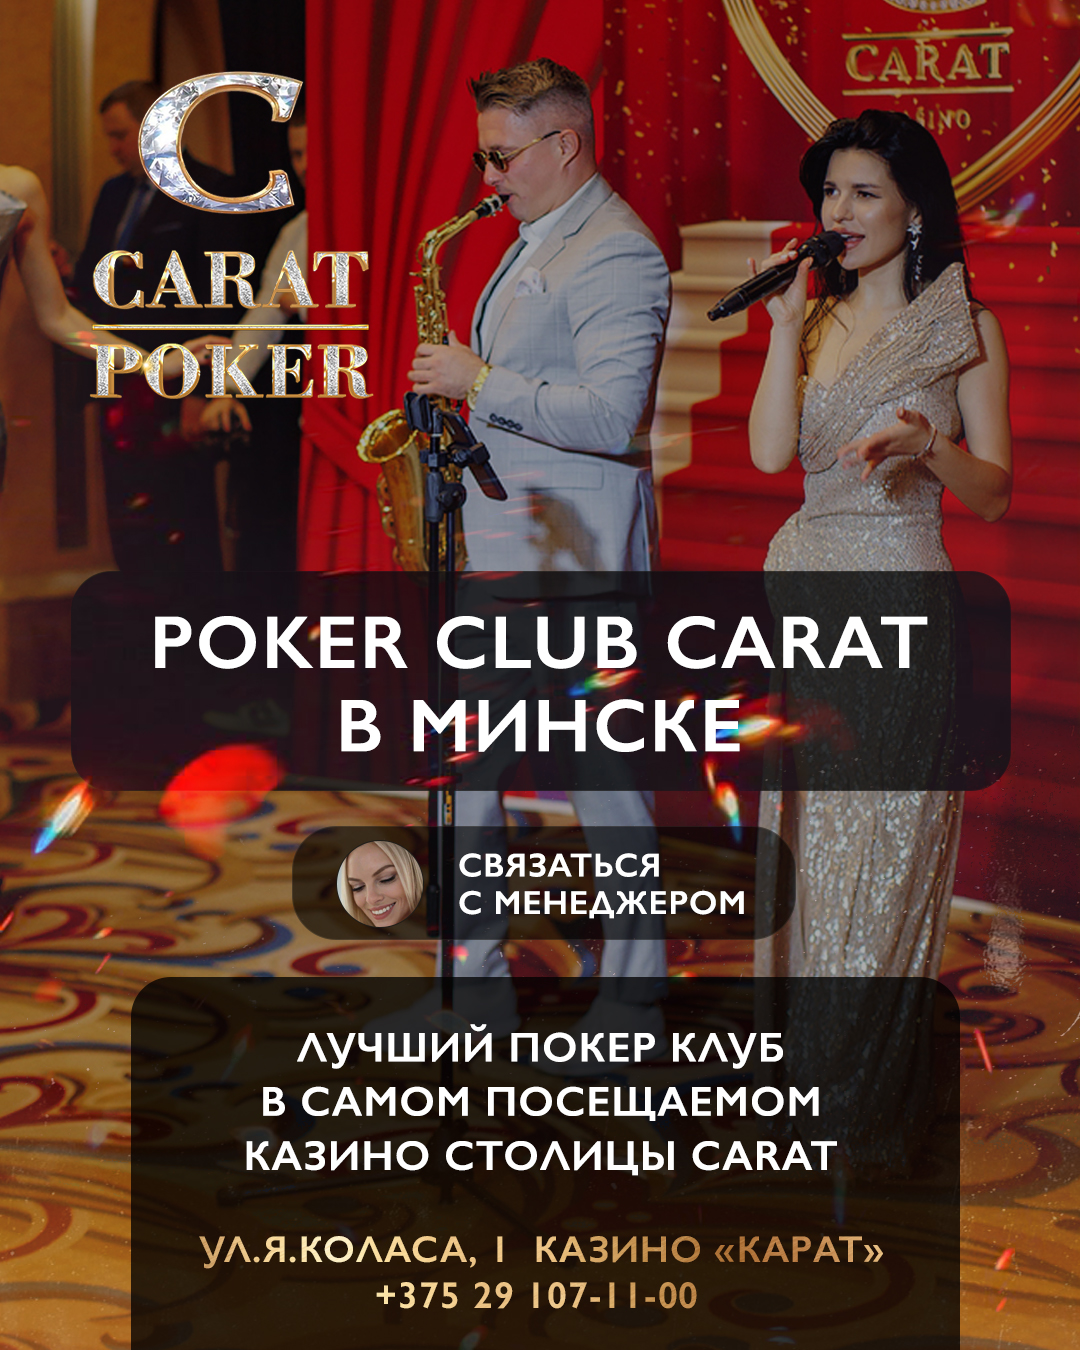 Poker Club Carat | Самое посещаемое казино столицы!